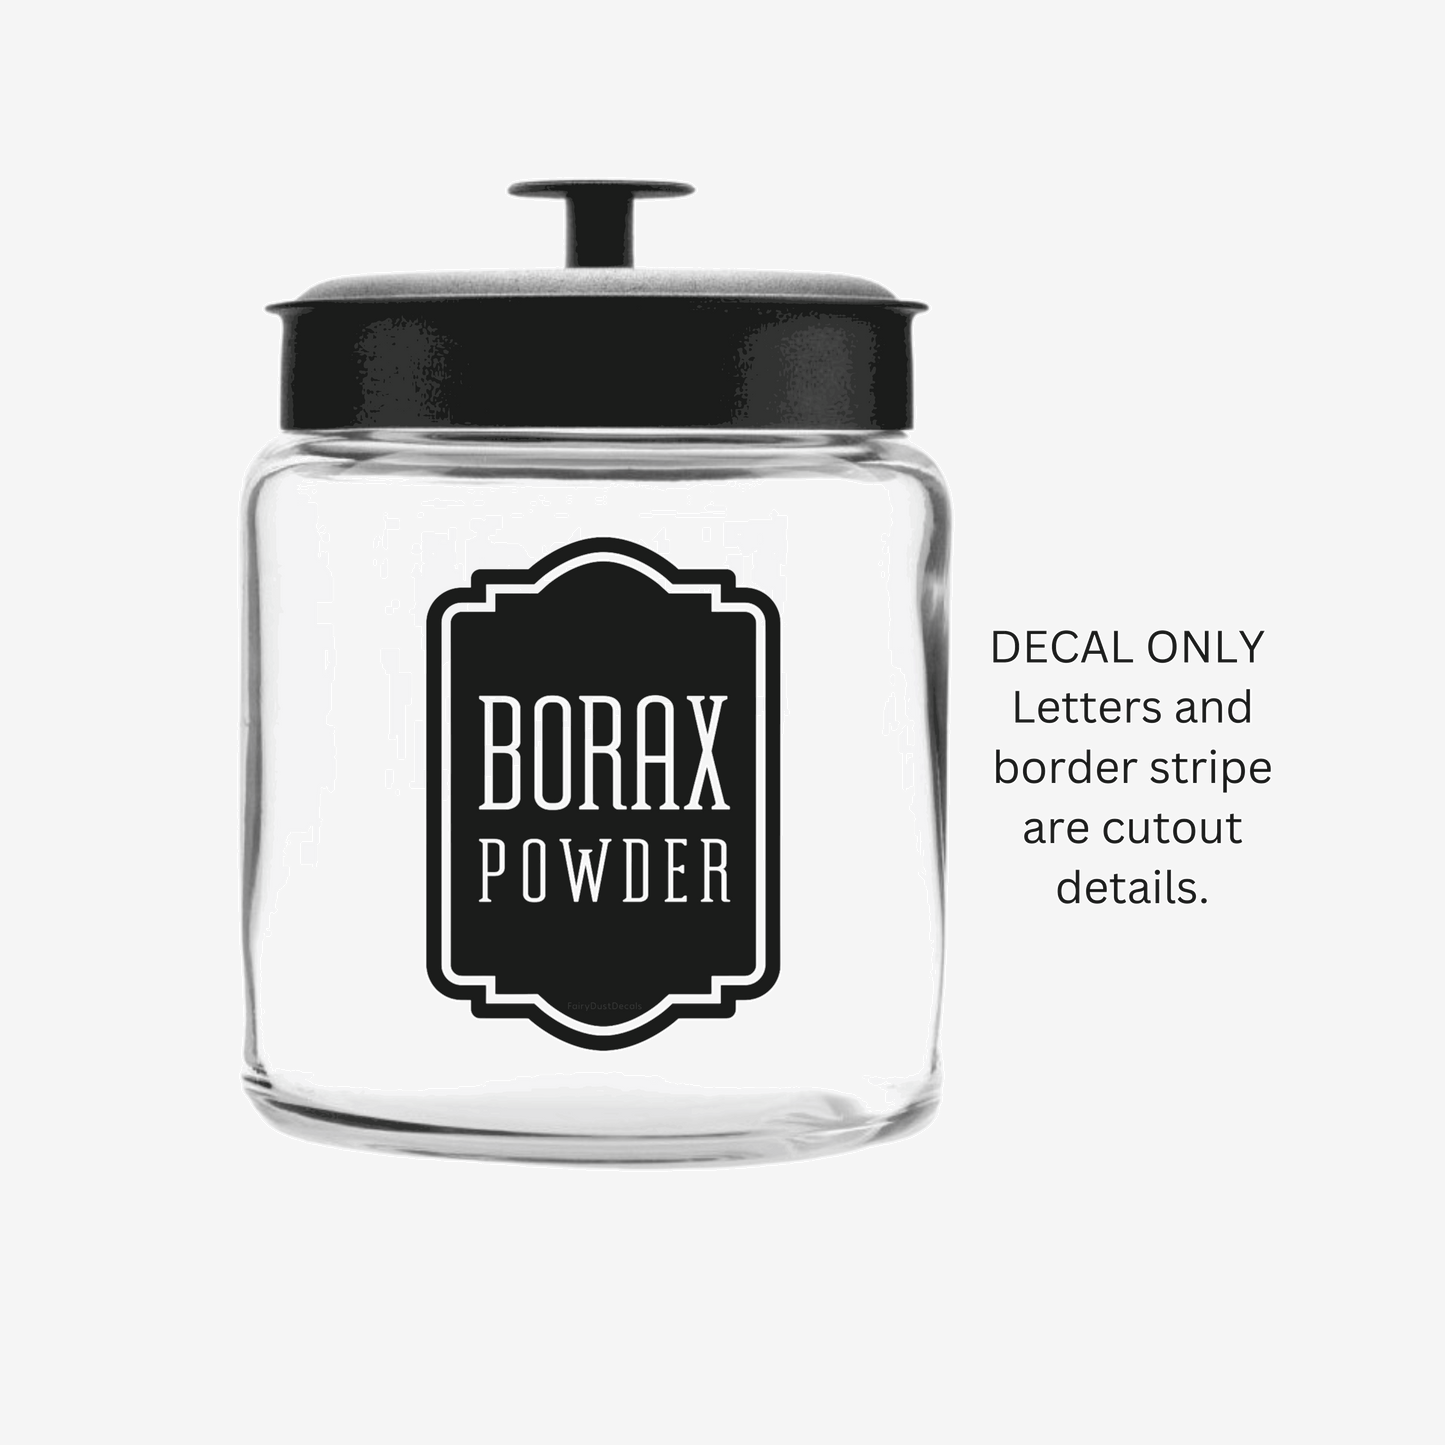 Borax Powder Decal